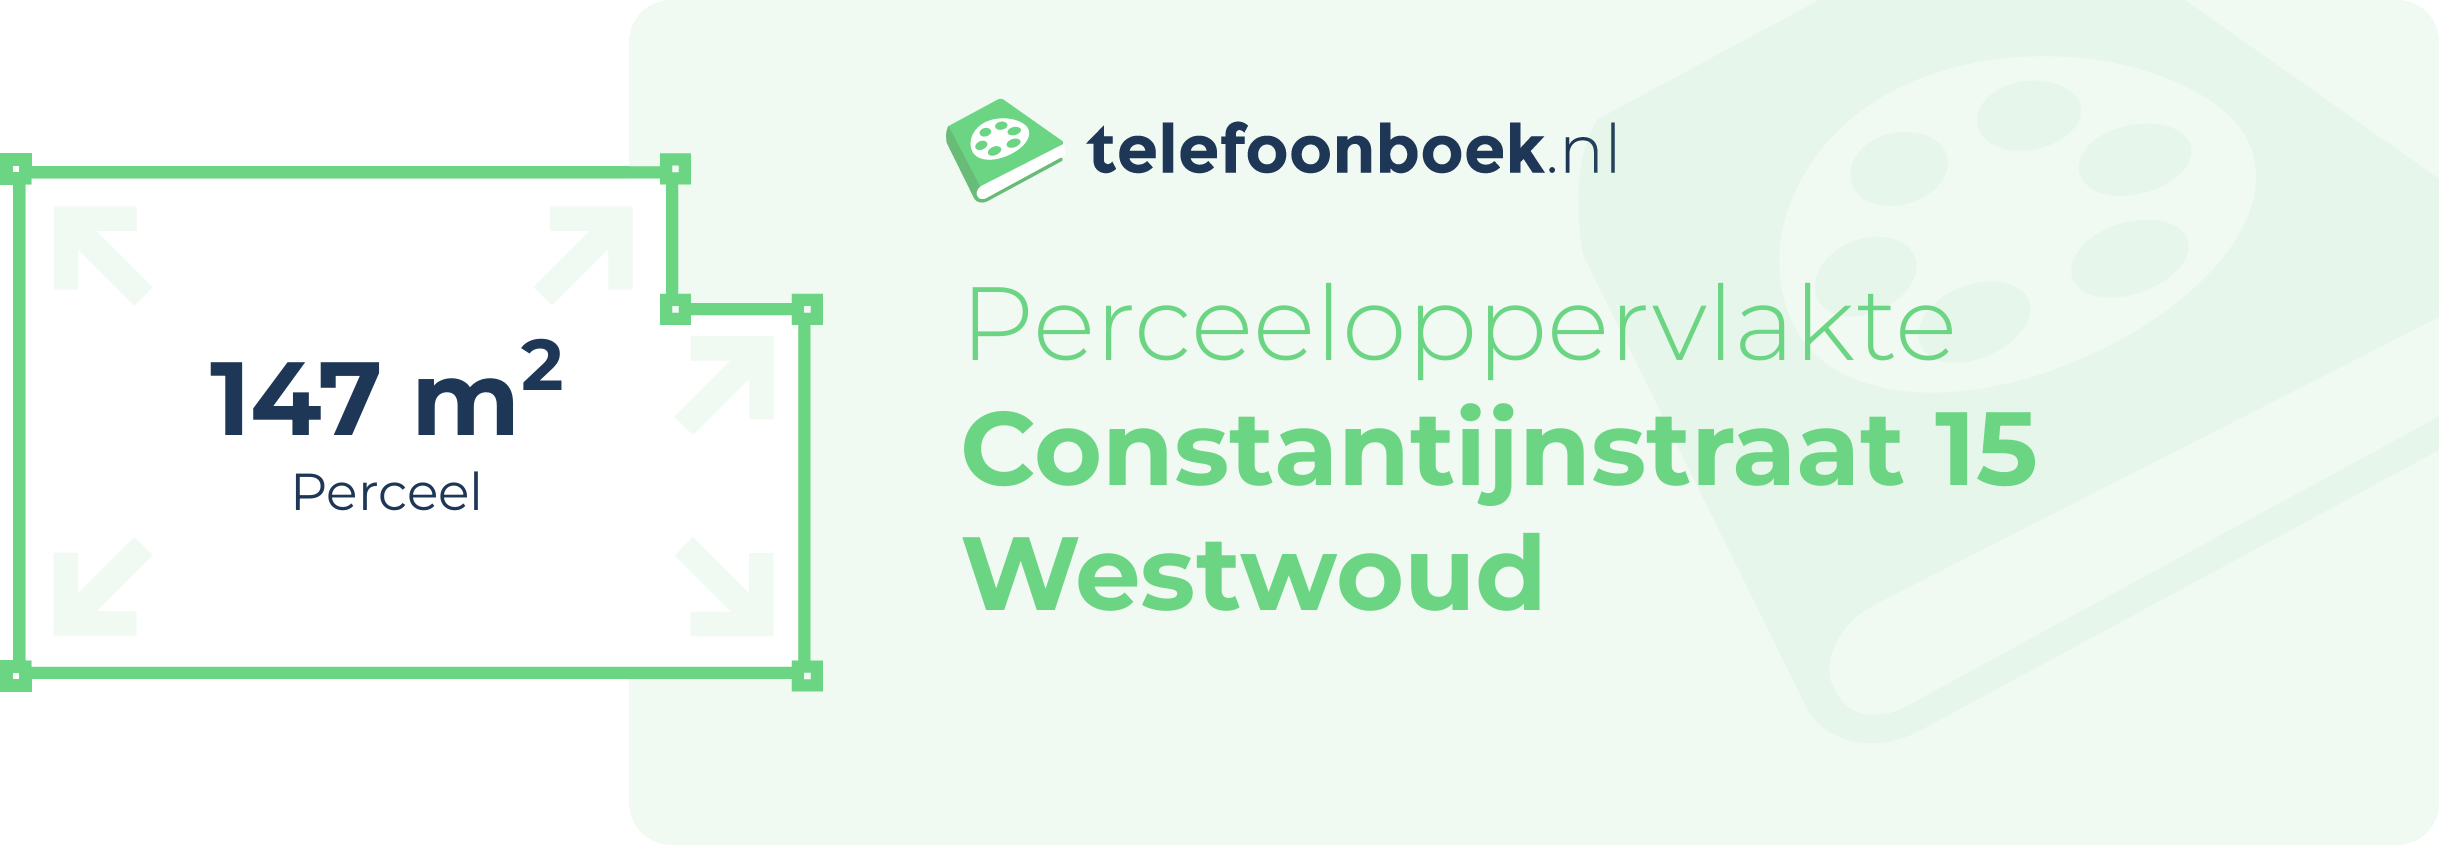 Perceeloppervlakte Constantijnstraat 15 Westwoud